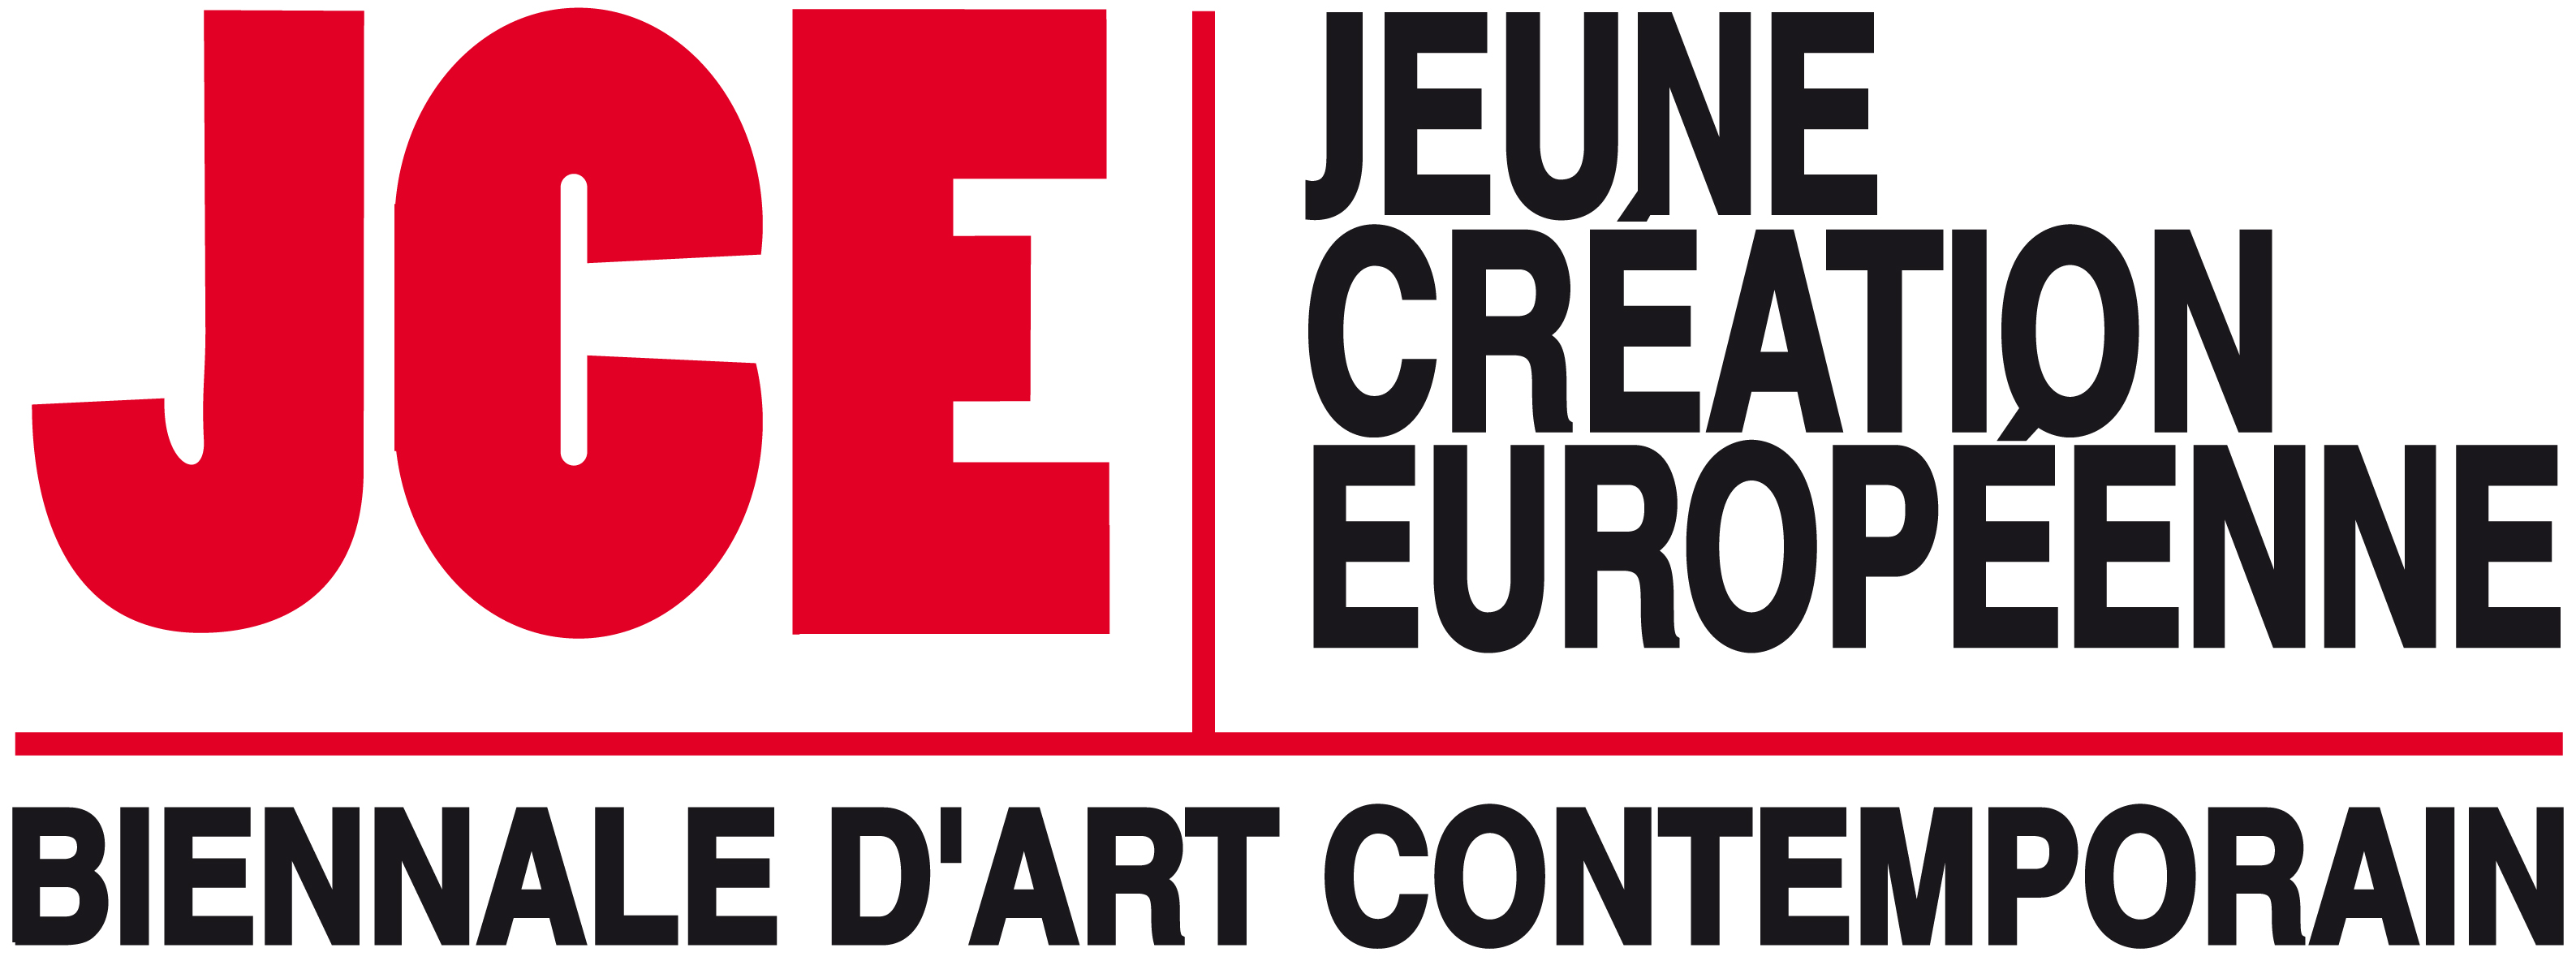 Jeune Création Européenne – logo (źródło: materiały prasowe Galerii Miejskiej we Wrocławiu)